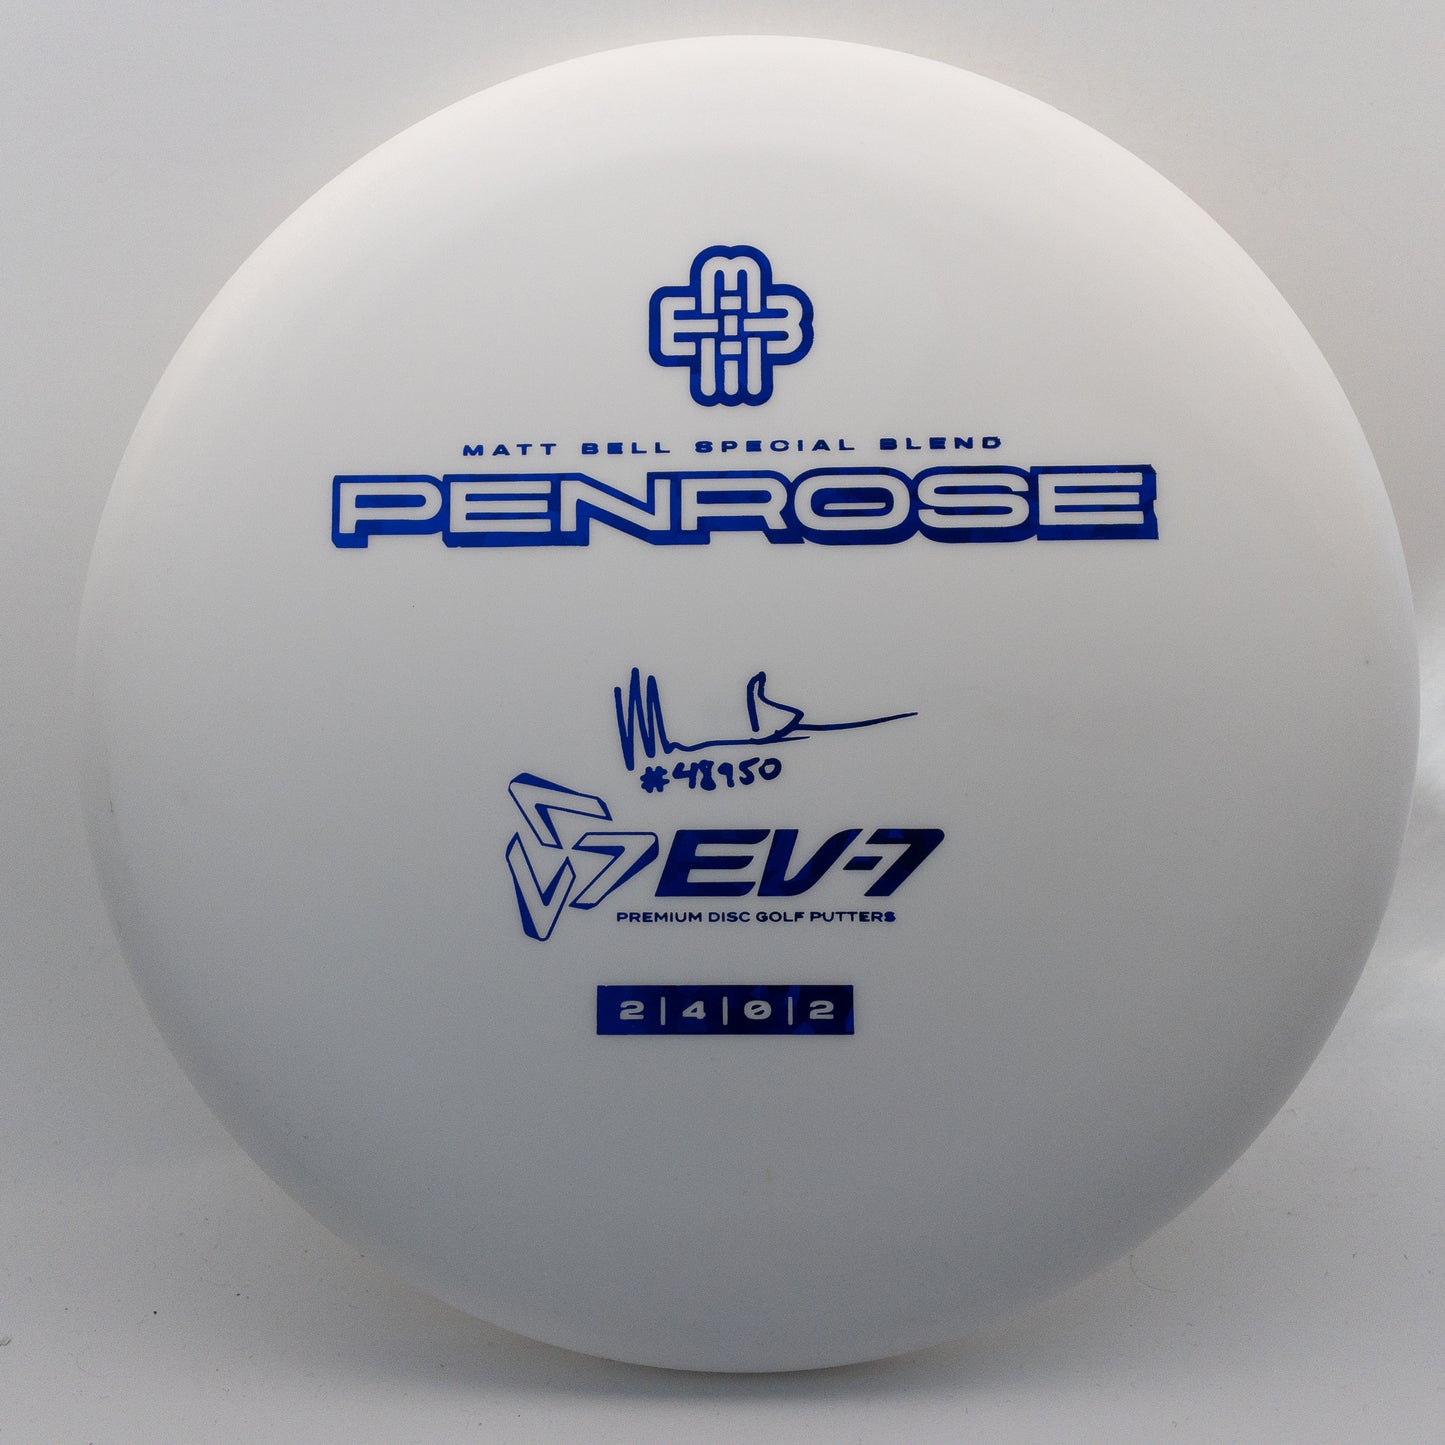 EV-7 OG Special Blend Penrose Matt Bell Tour Series